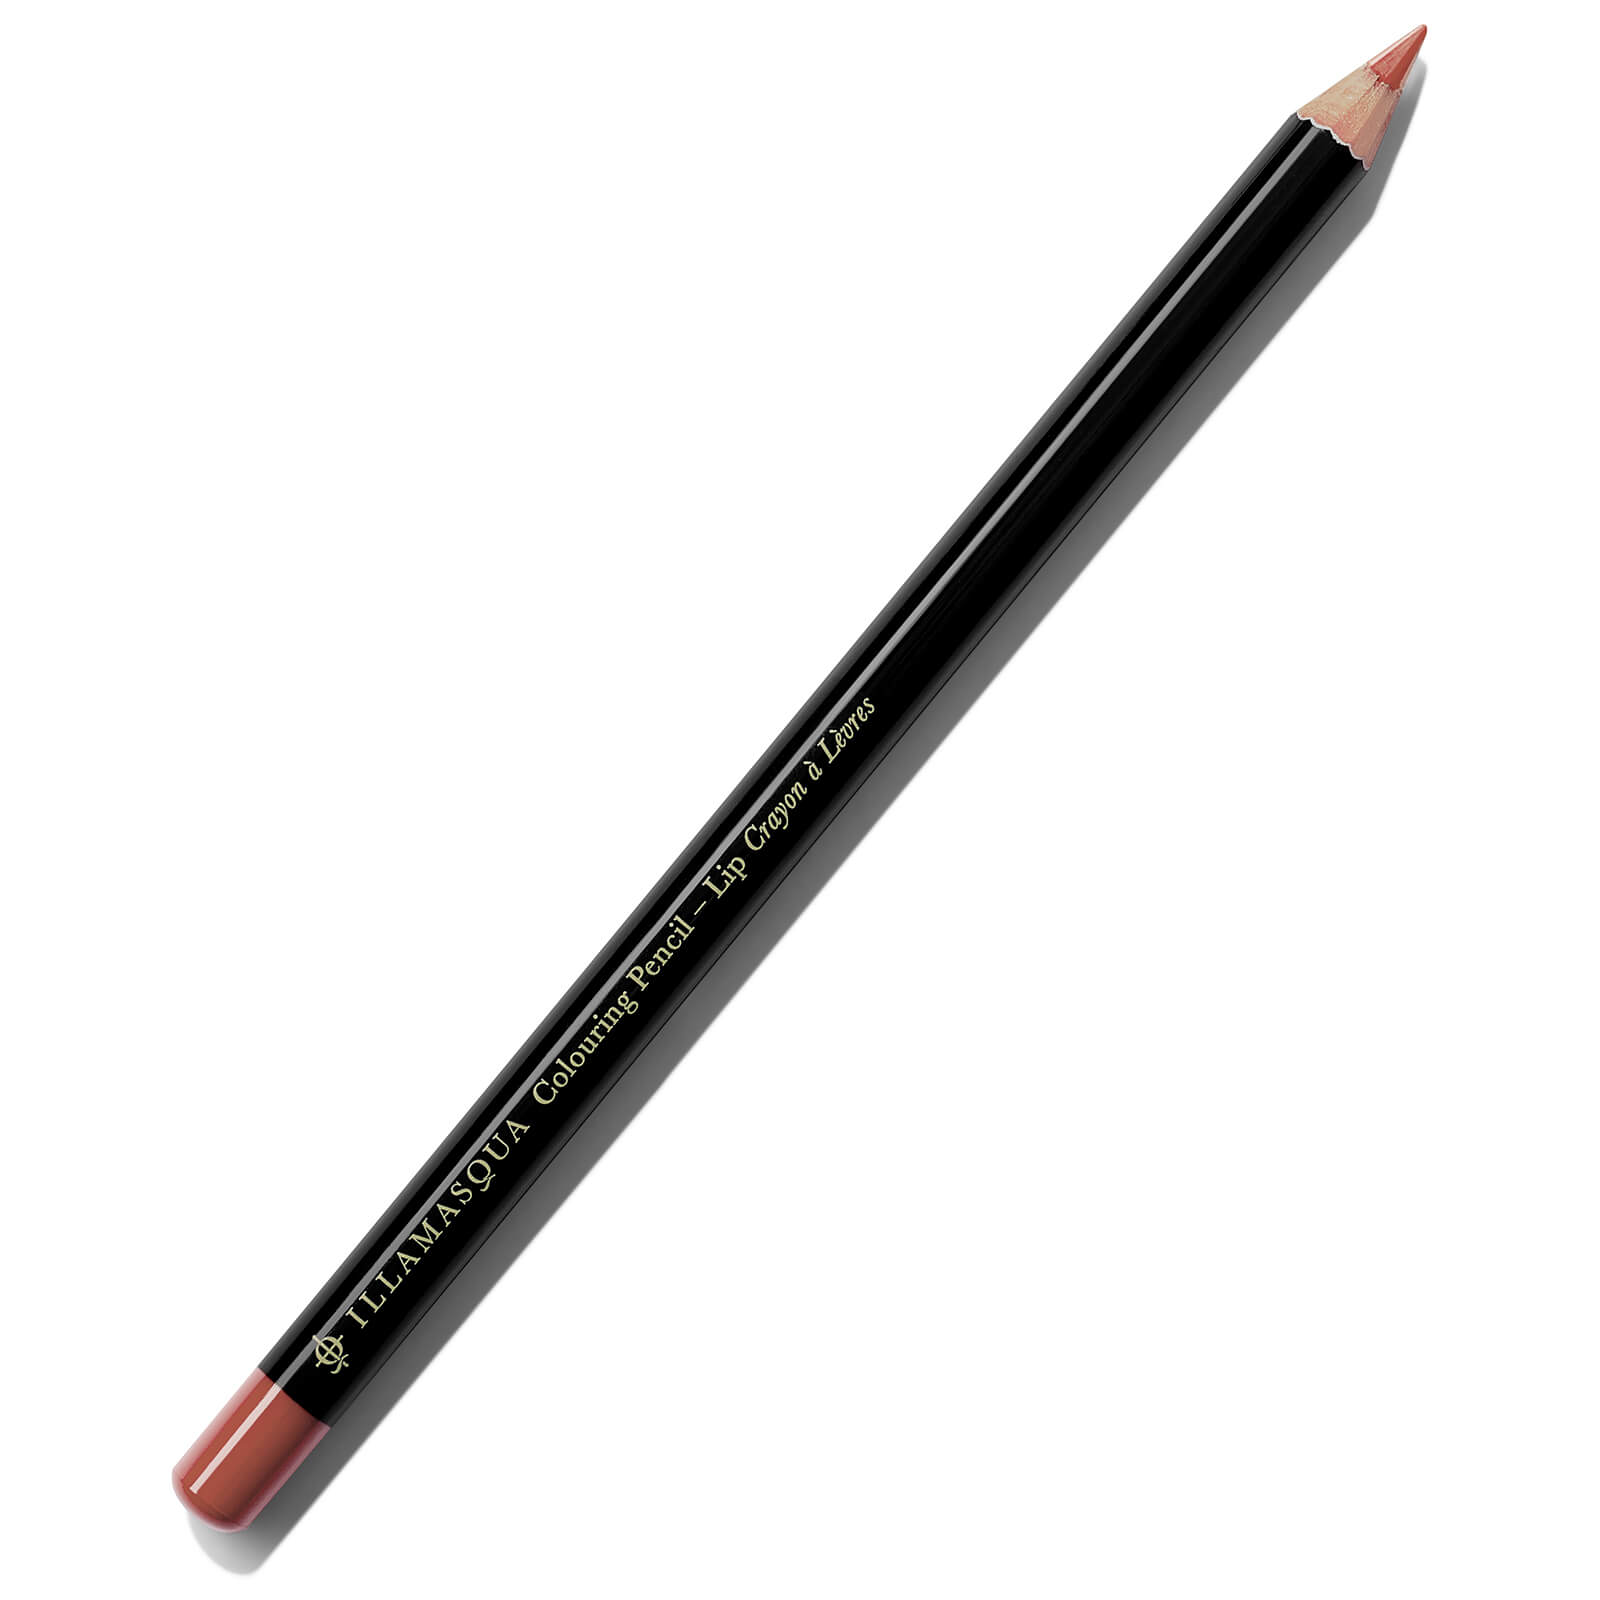 colouring lip pencil (various shades) - fantasy